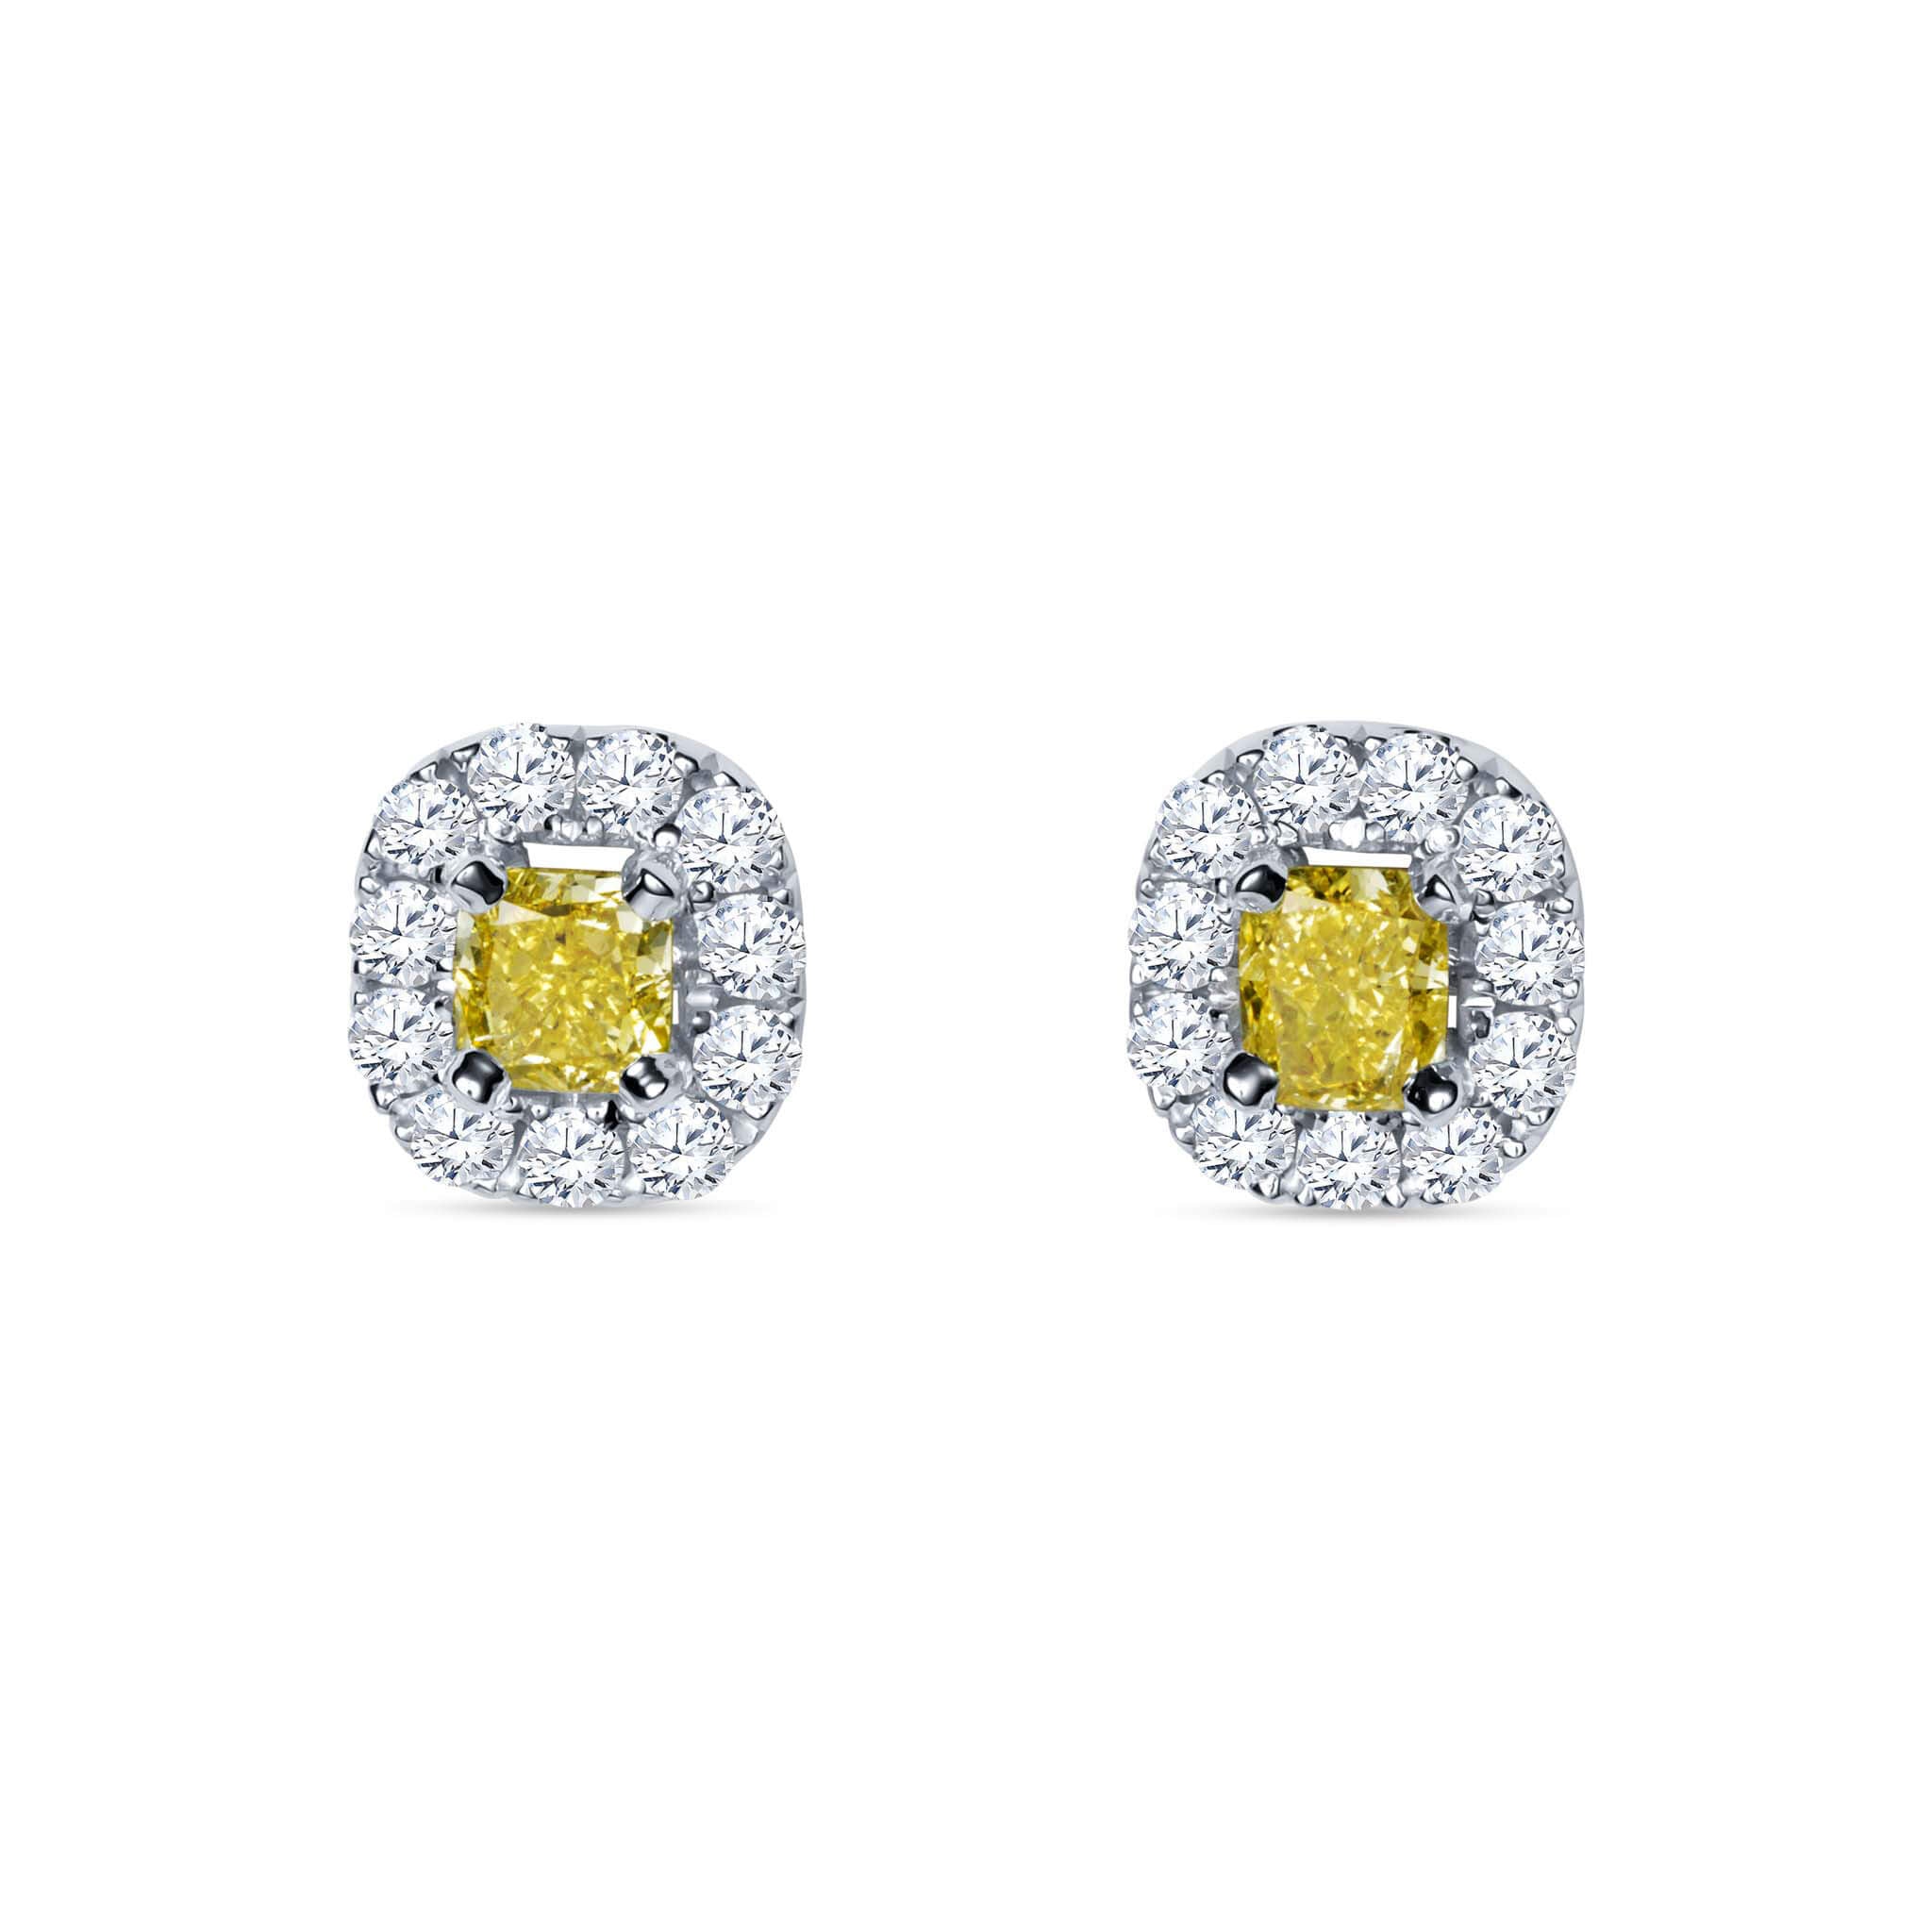 Kolczyki z żółtymi diamentami Fancy Yellow - 1,19 ct